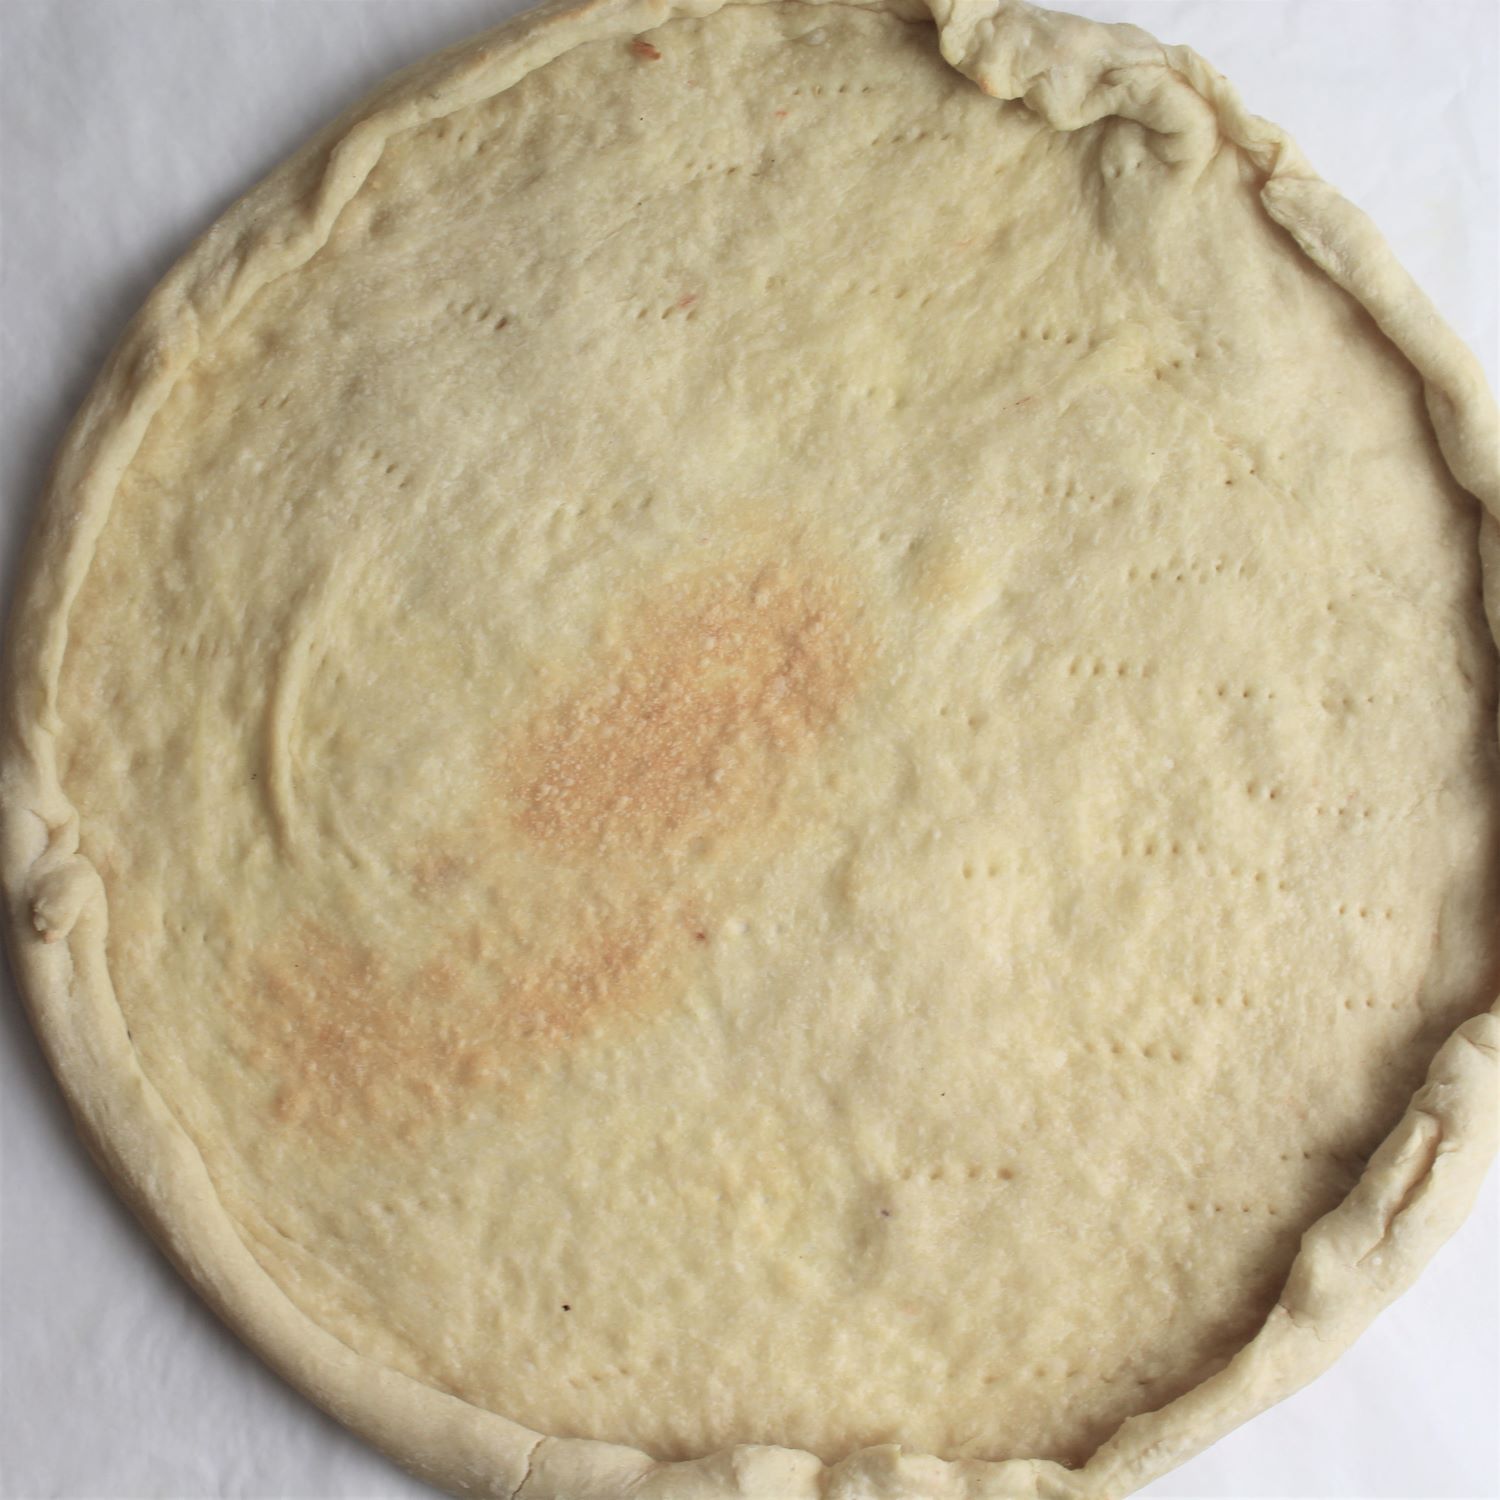 par-baked pizza dough